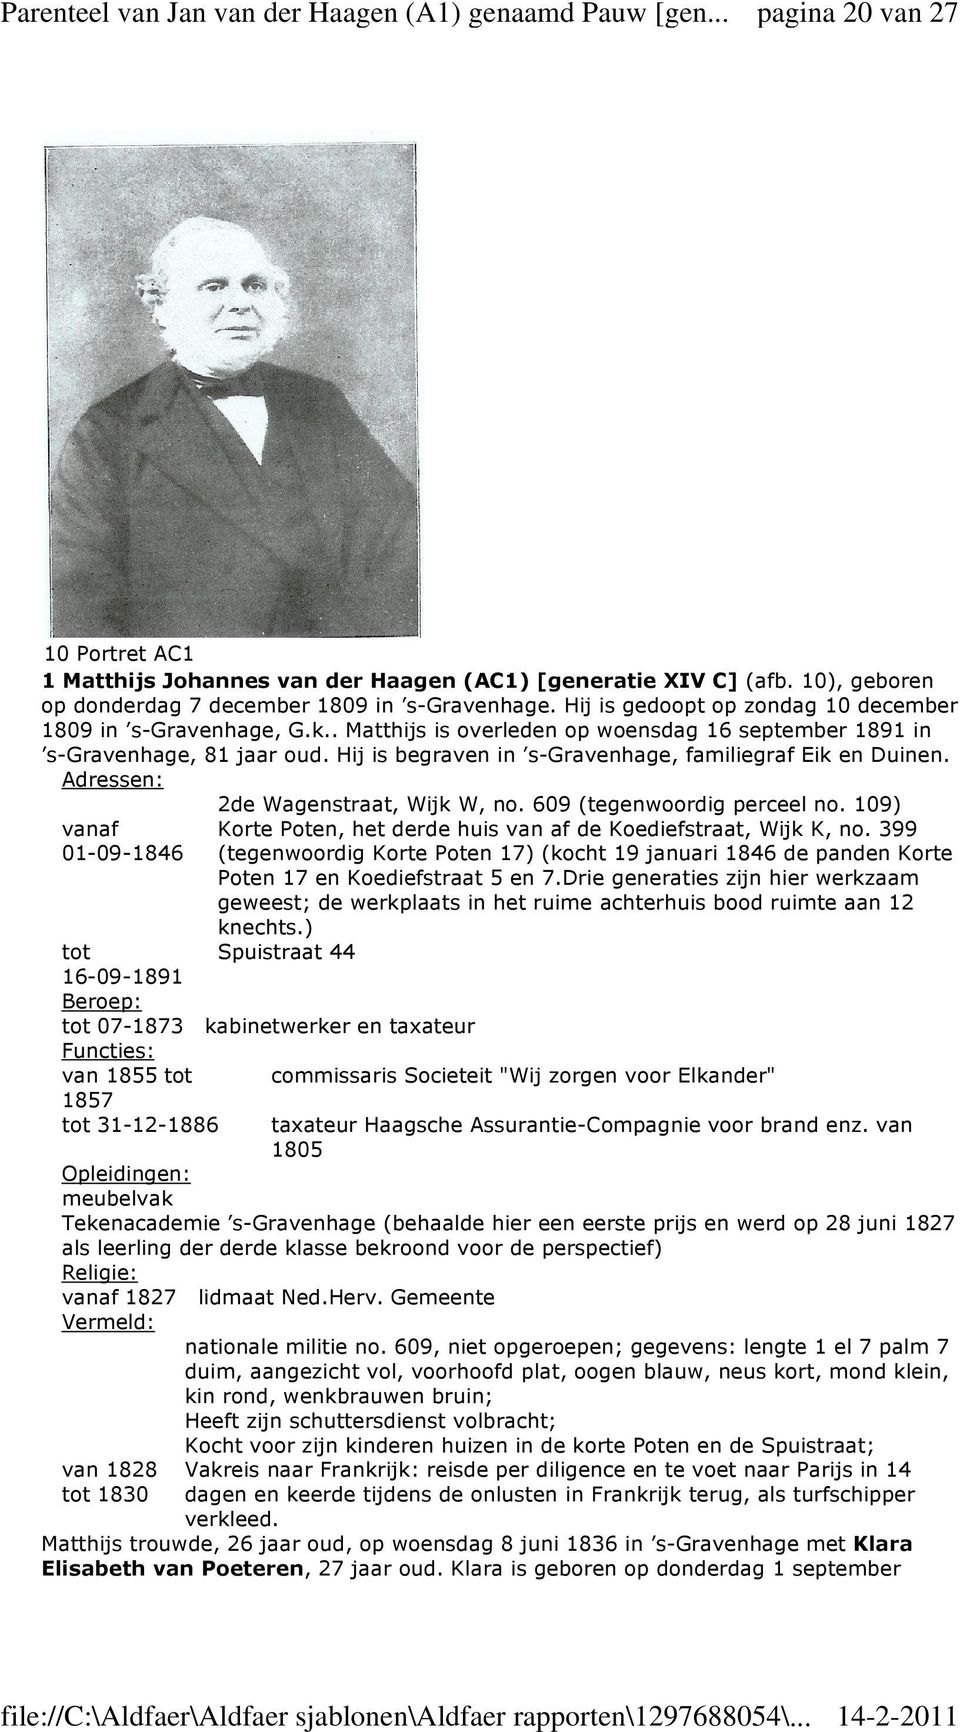 Hij is begraven in s-gravenhage, familiegraf Eik en Duinen. Adressen: 2de Wagenstraat, Wijk W, no. 609 (tegenwoordig perceel no.